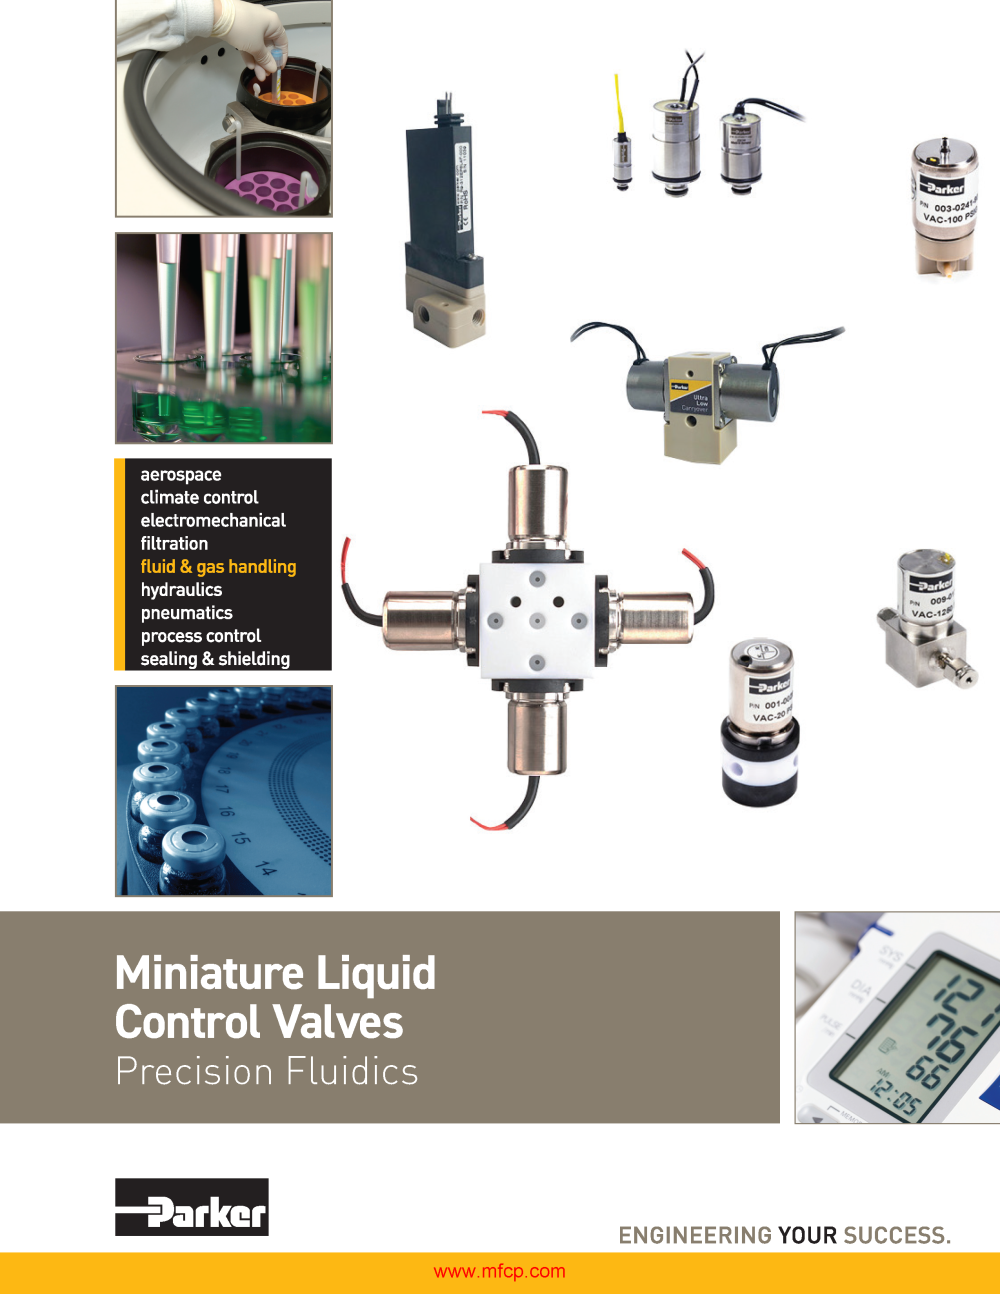 Parker Precision Fluidics Liquid Valves Catalog